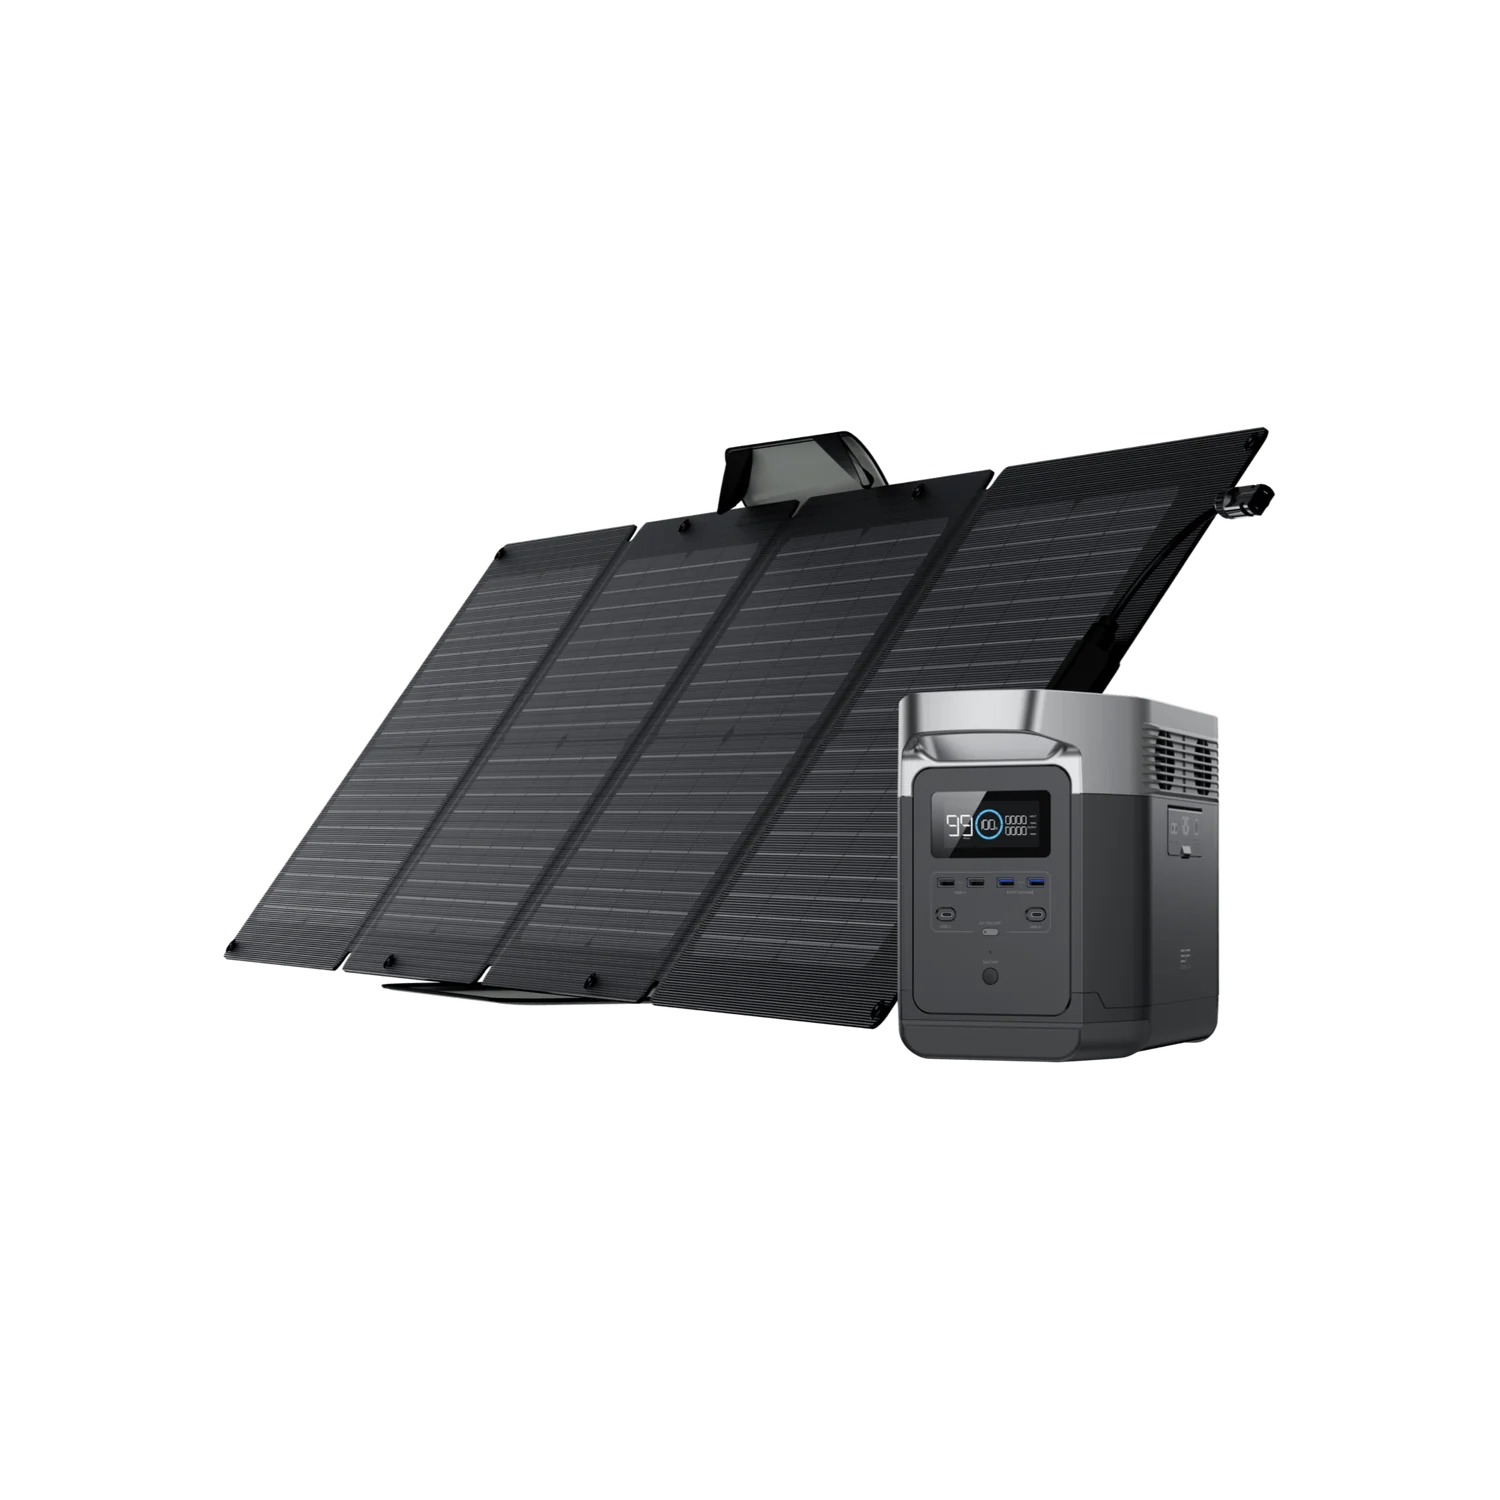 1800W Ecoflow DELTA 2 LiFePO4 Portable Power Station + 2 x 110W Ecoflow Solar Panels $989 + Free Shipping